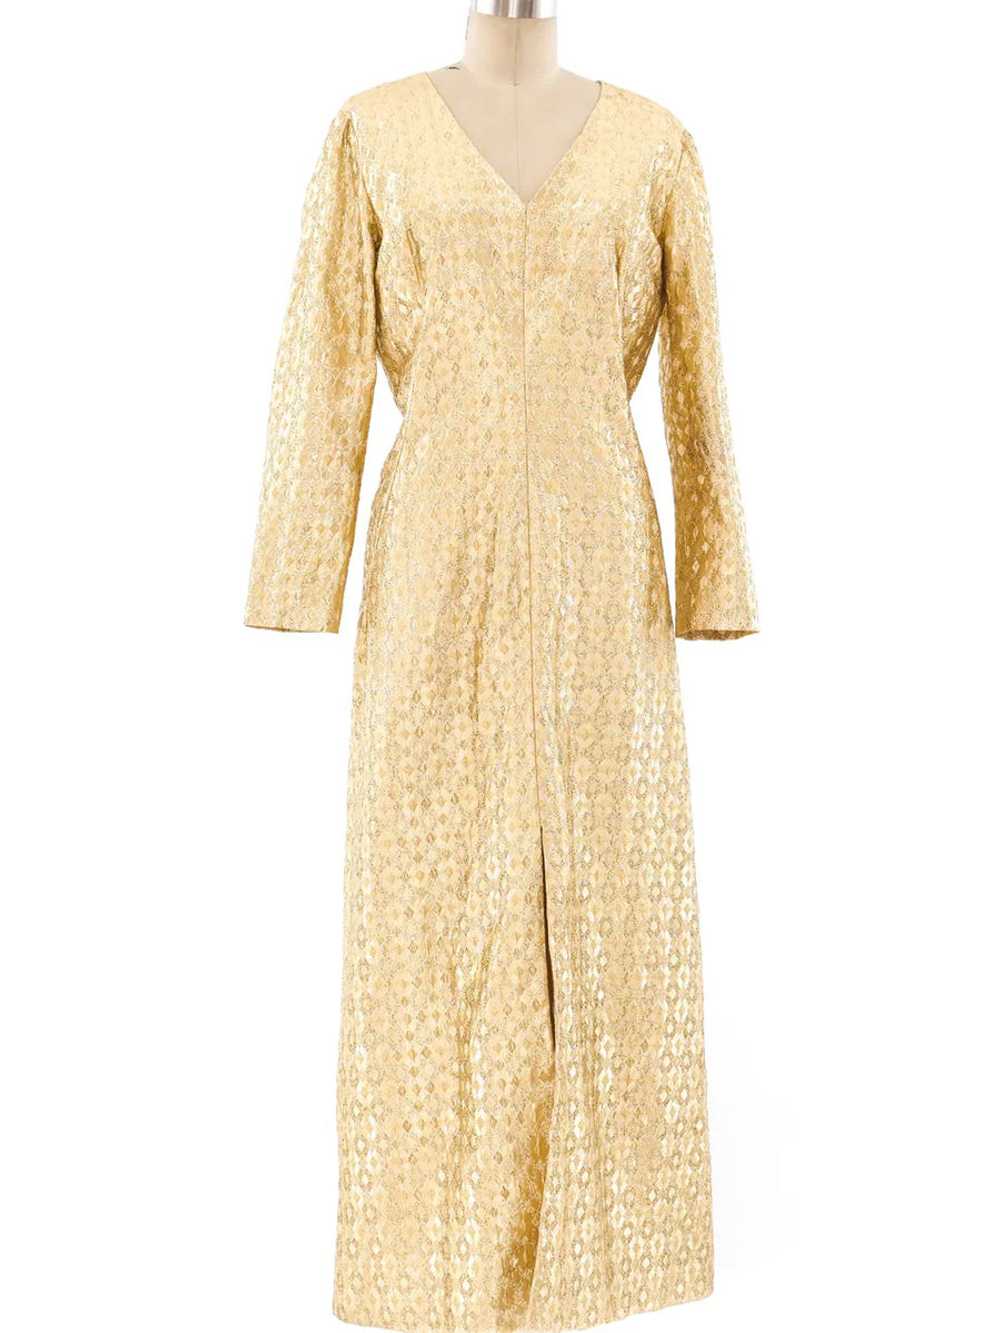 Metallic Gold Lamé Maxi Dress - image 1